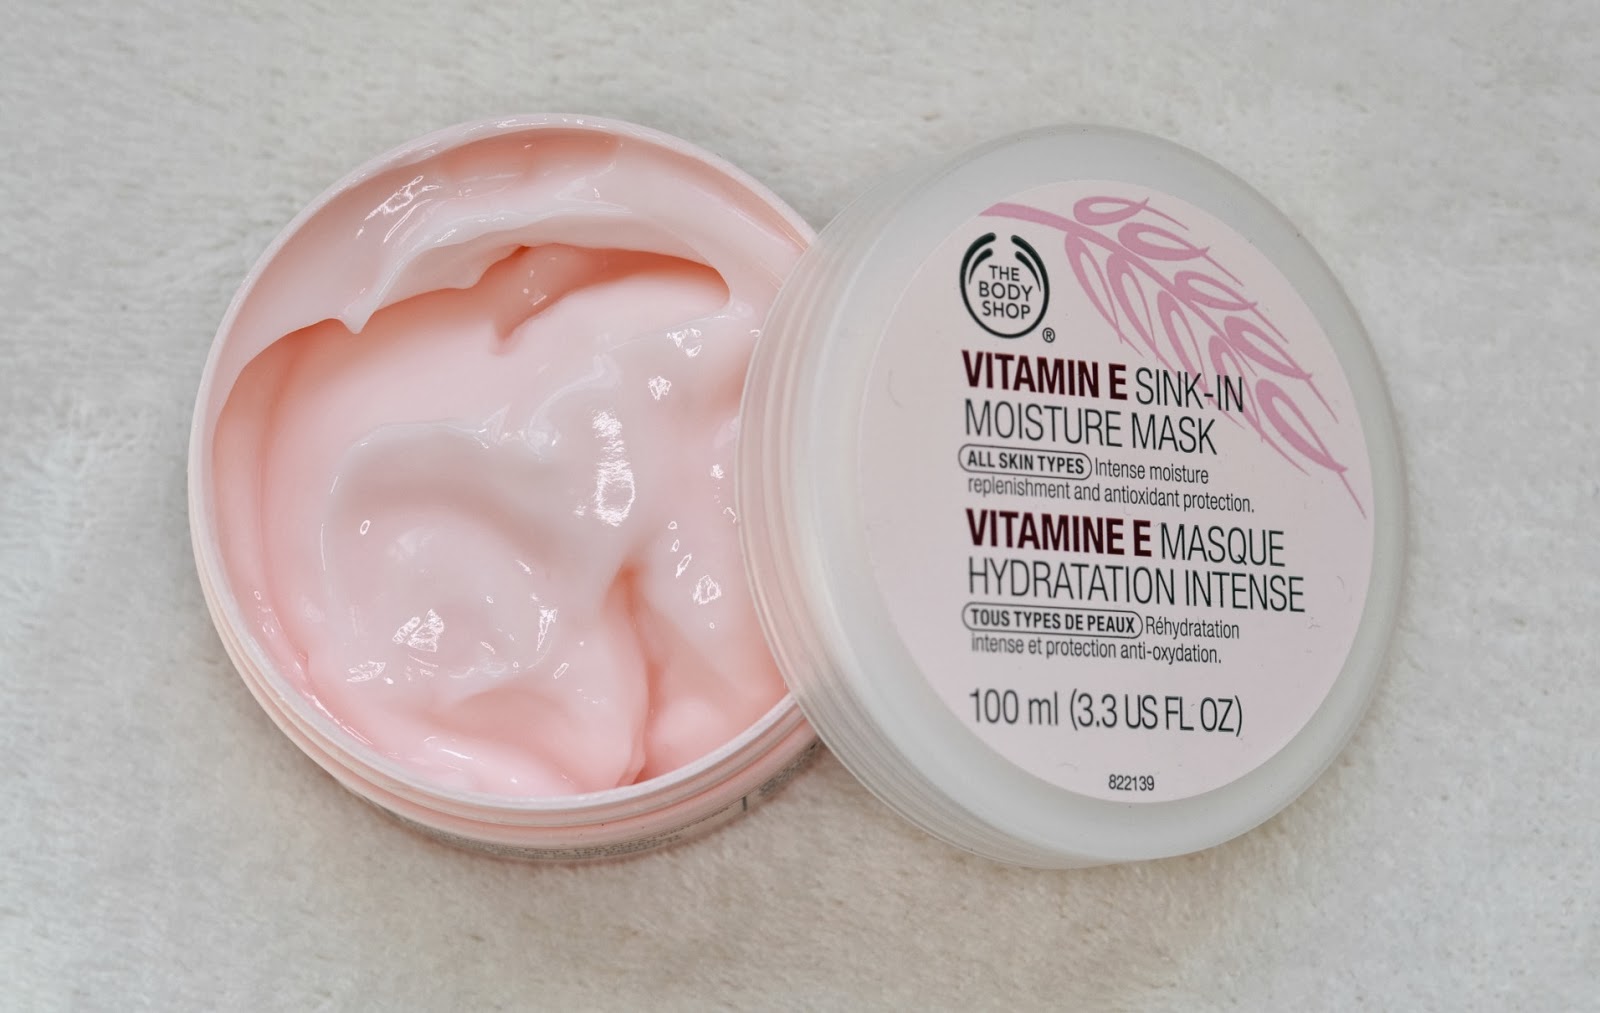 The Body Shop Vitamin E Overnight Serum In Oil Moisture